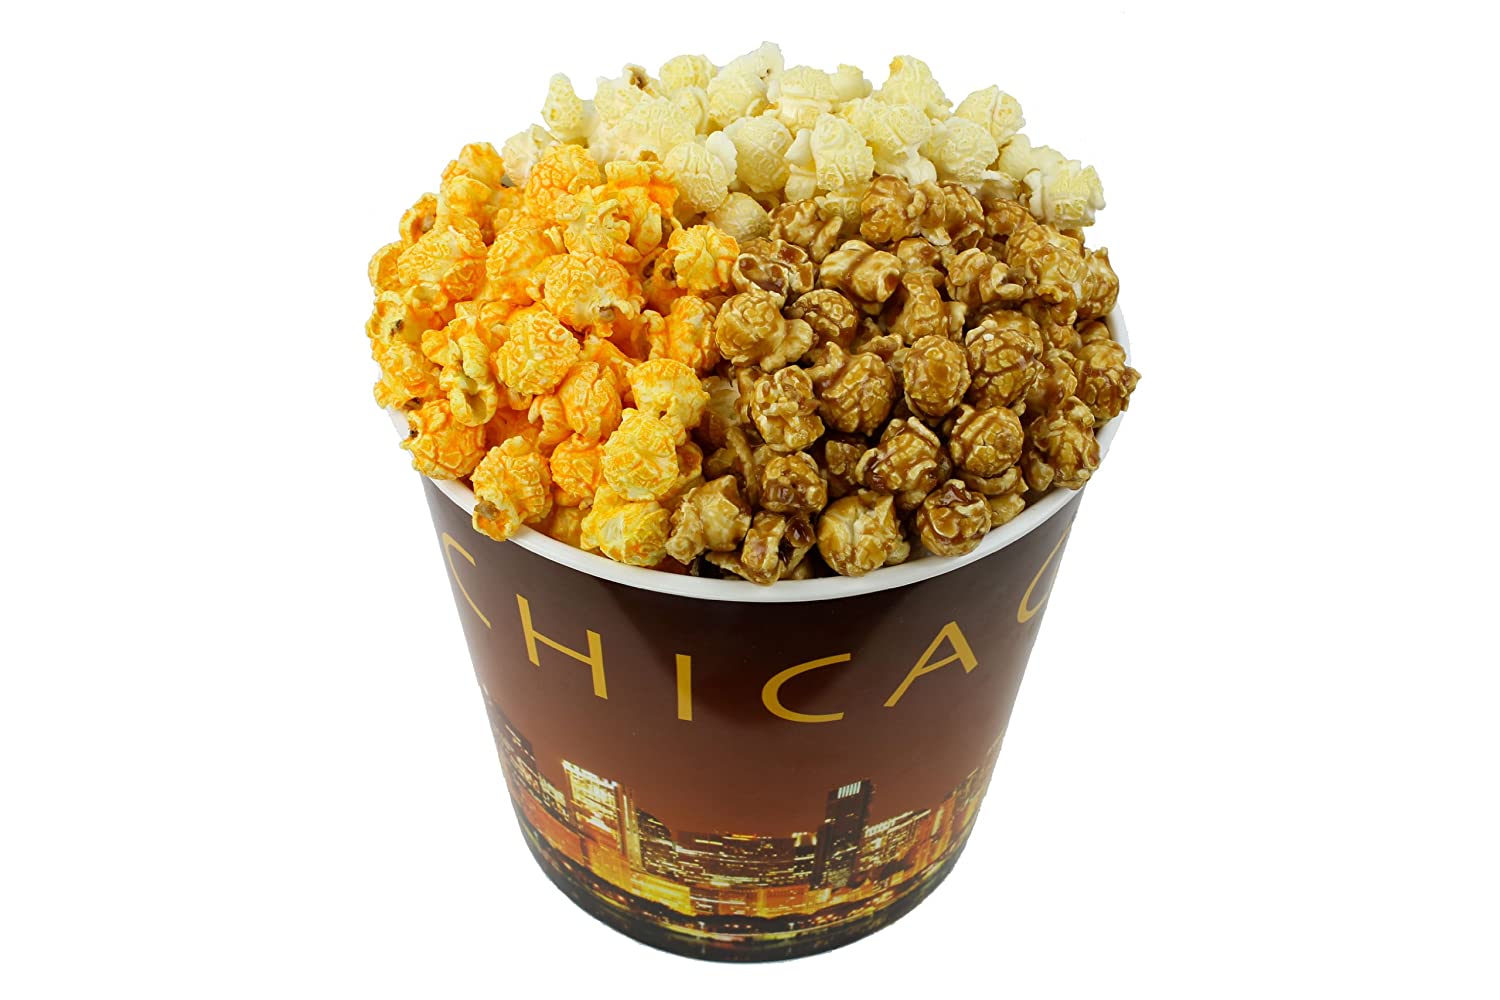 Signature Popcorn Preservative-Free Snack & Tin, 1-Gallon